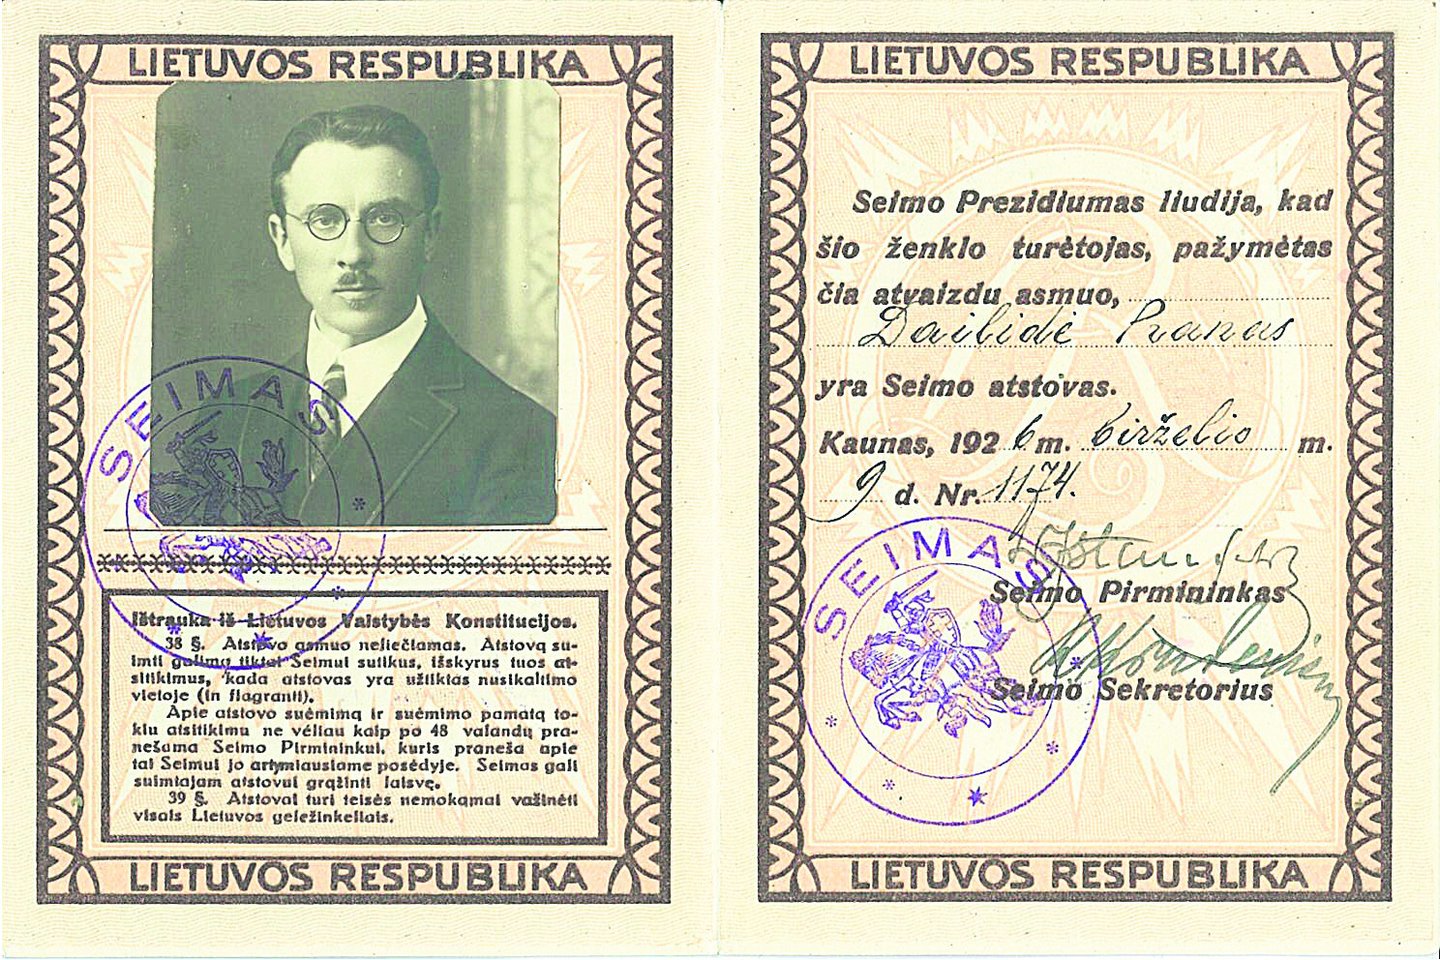 Kolekcijoje yra ir IV Lietuvos Respublikos Seimo nario P.Dailidės pažymėjimas.